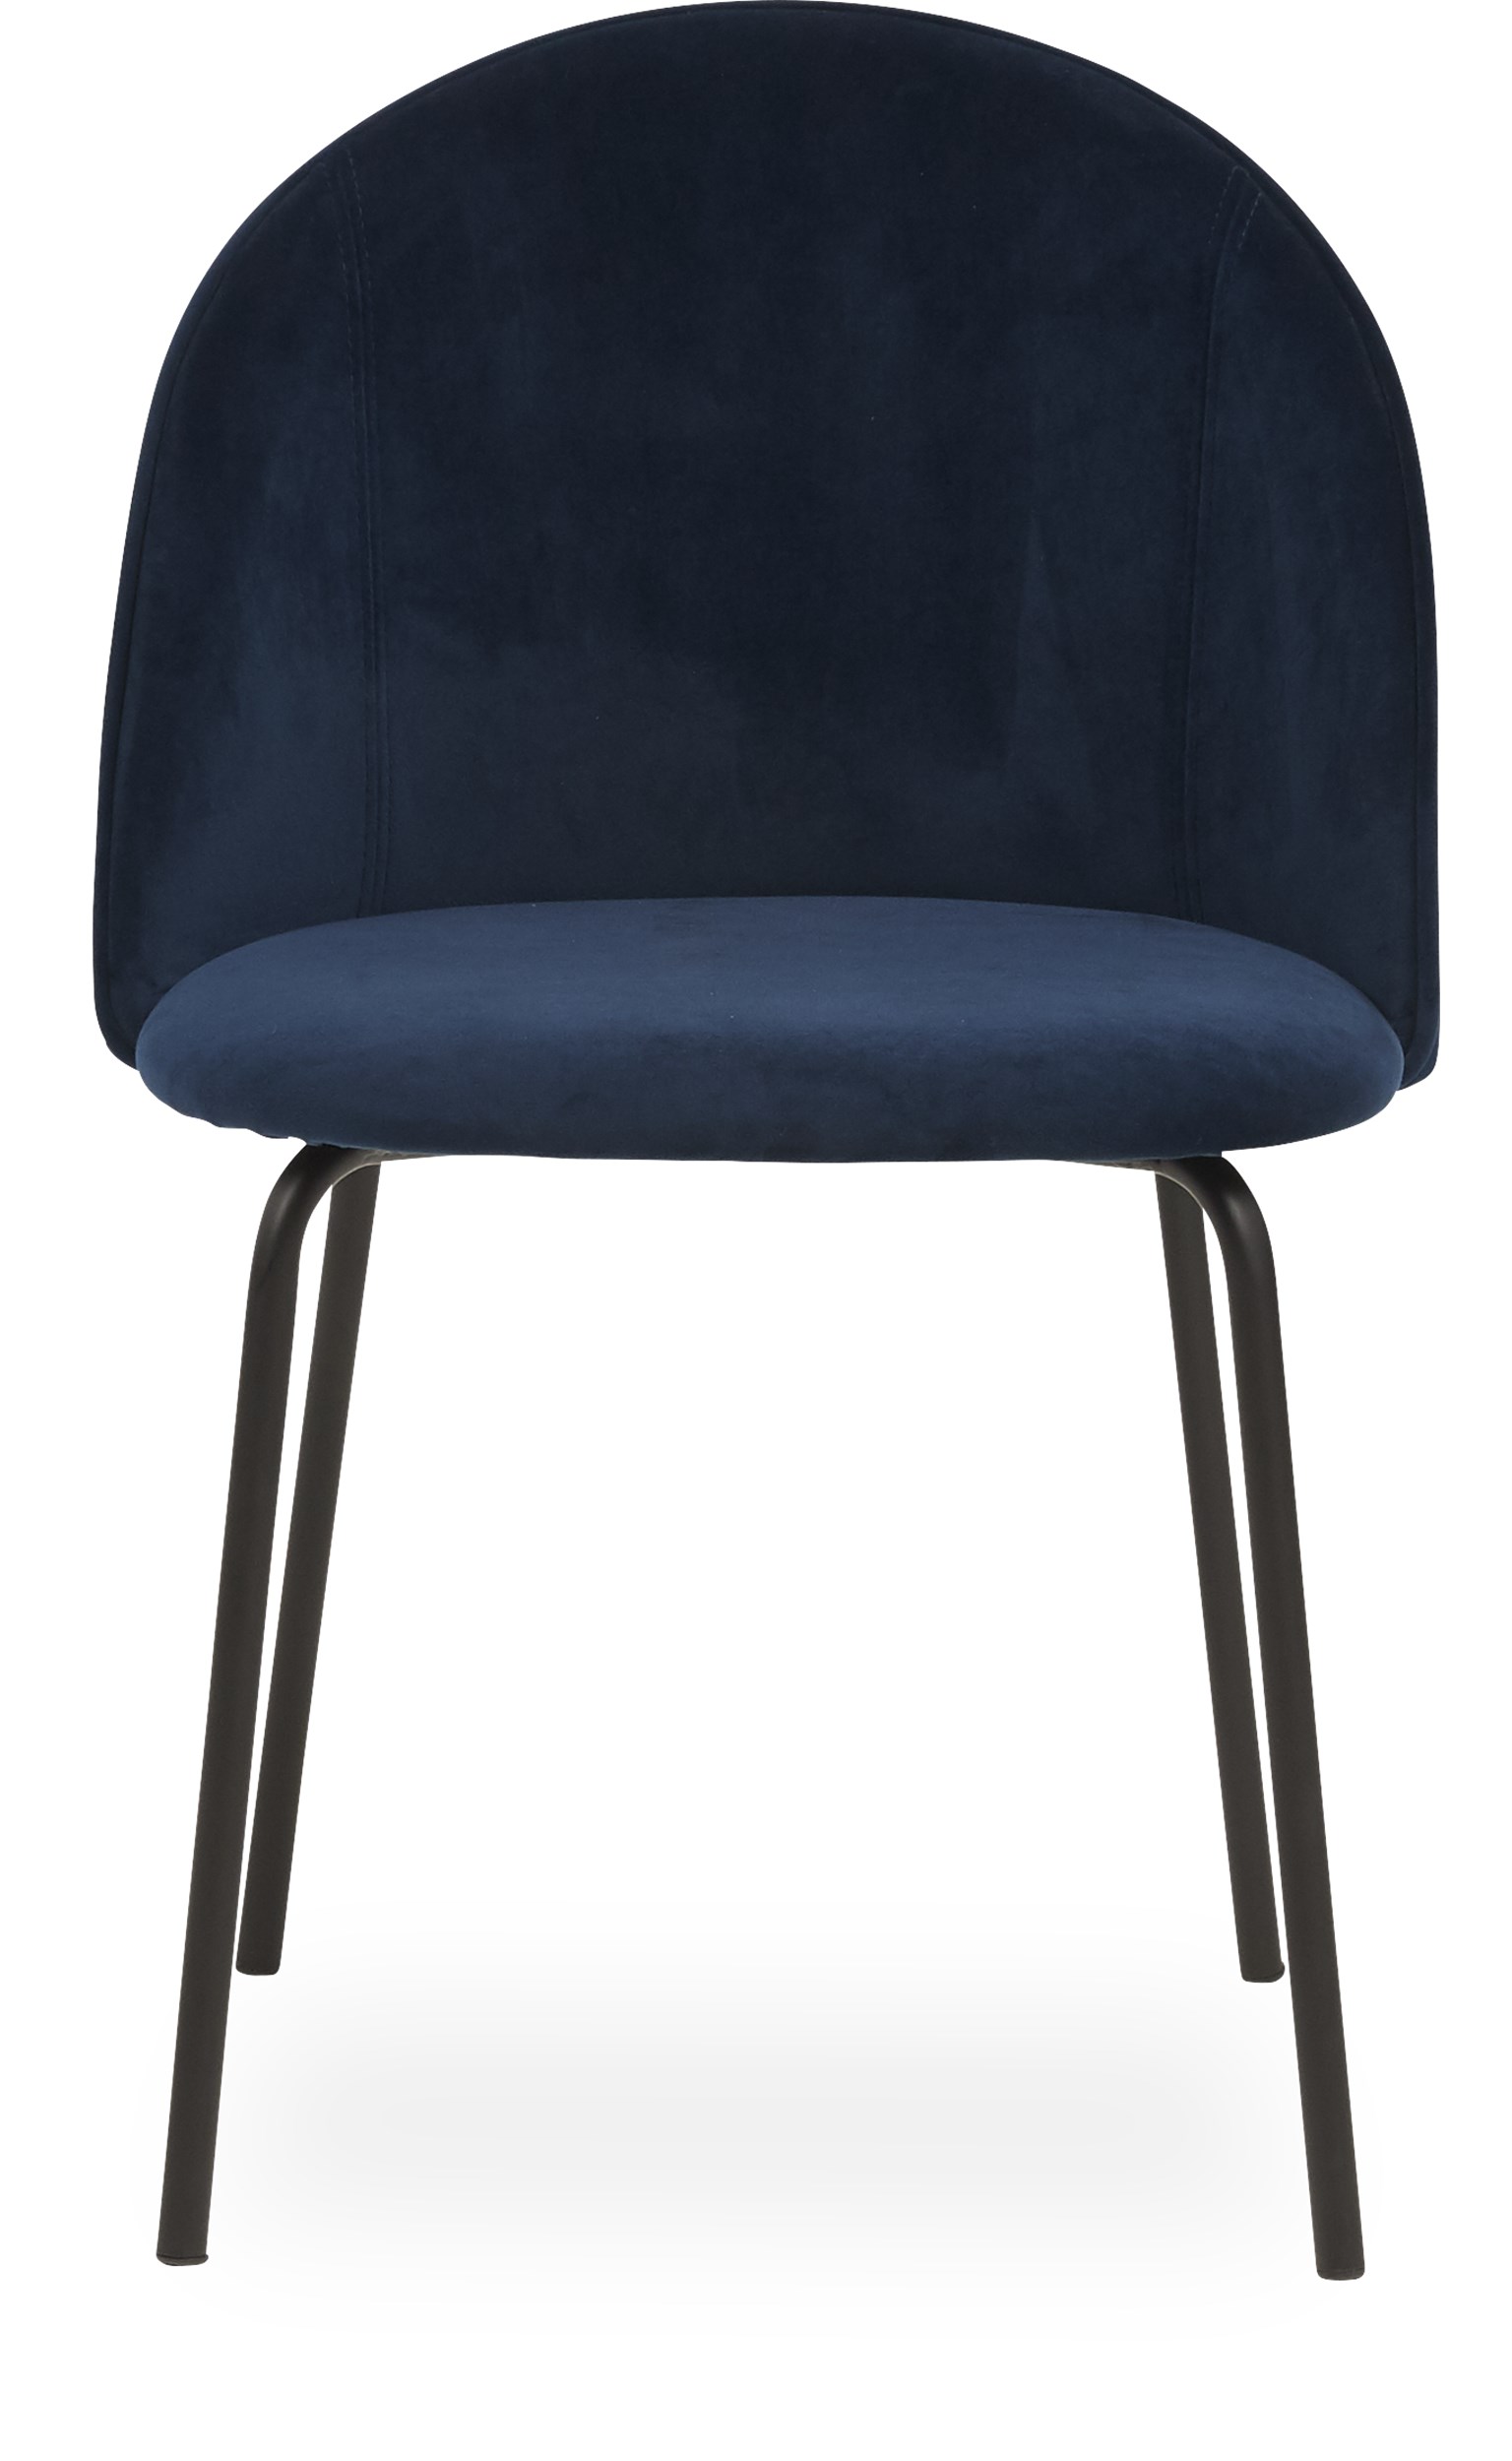 Barnes Spisebordsstol - Sæde i navy blue velour og ben i sort pulverlakeret metal